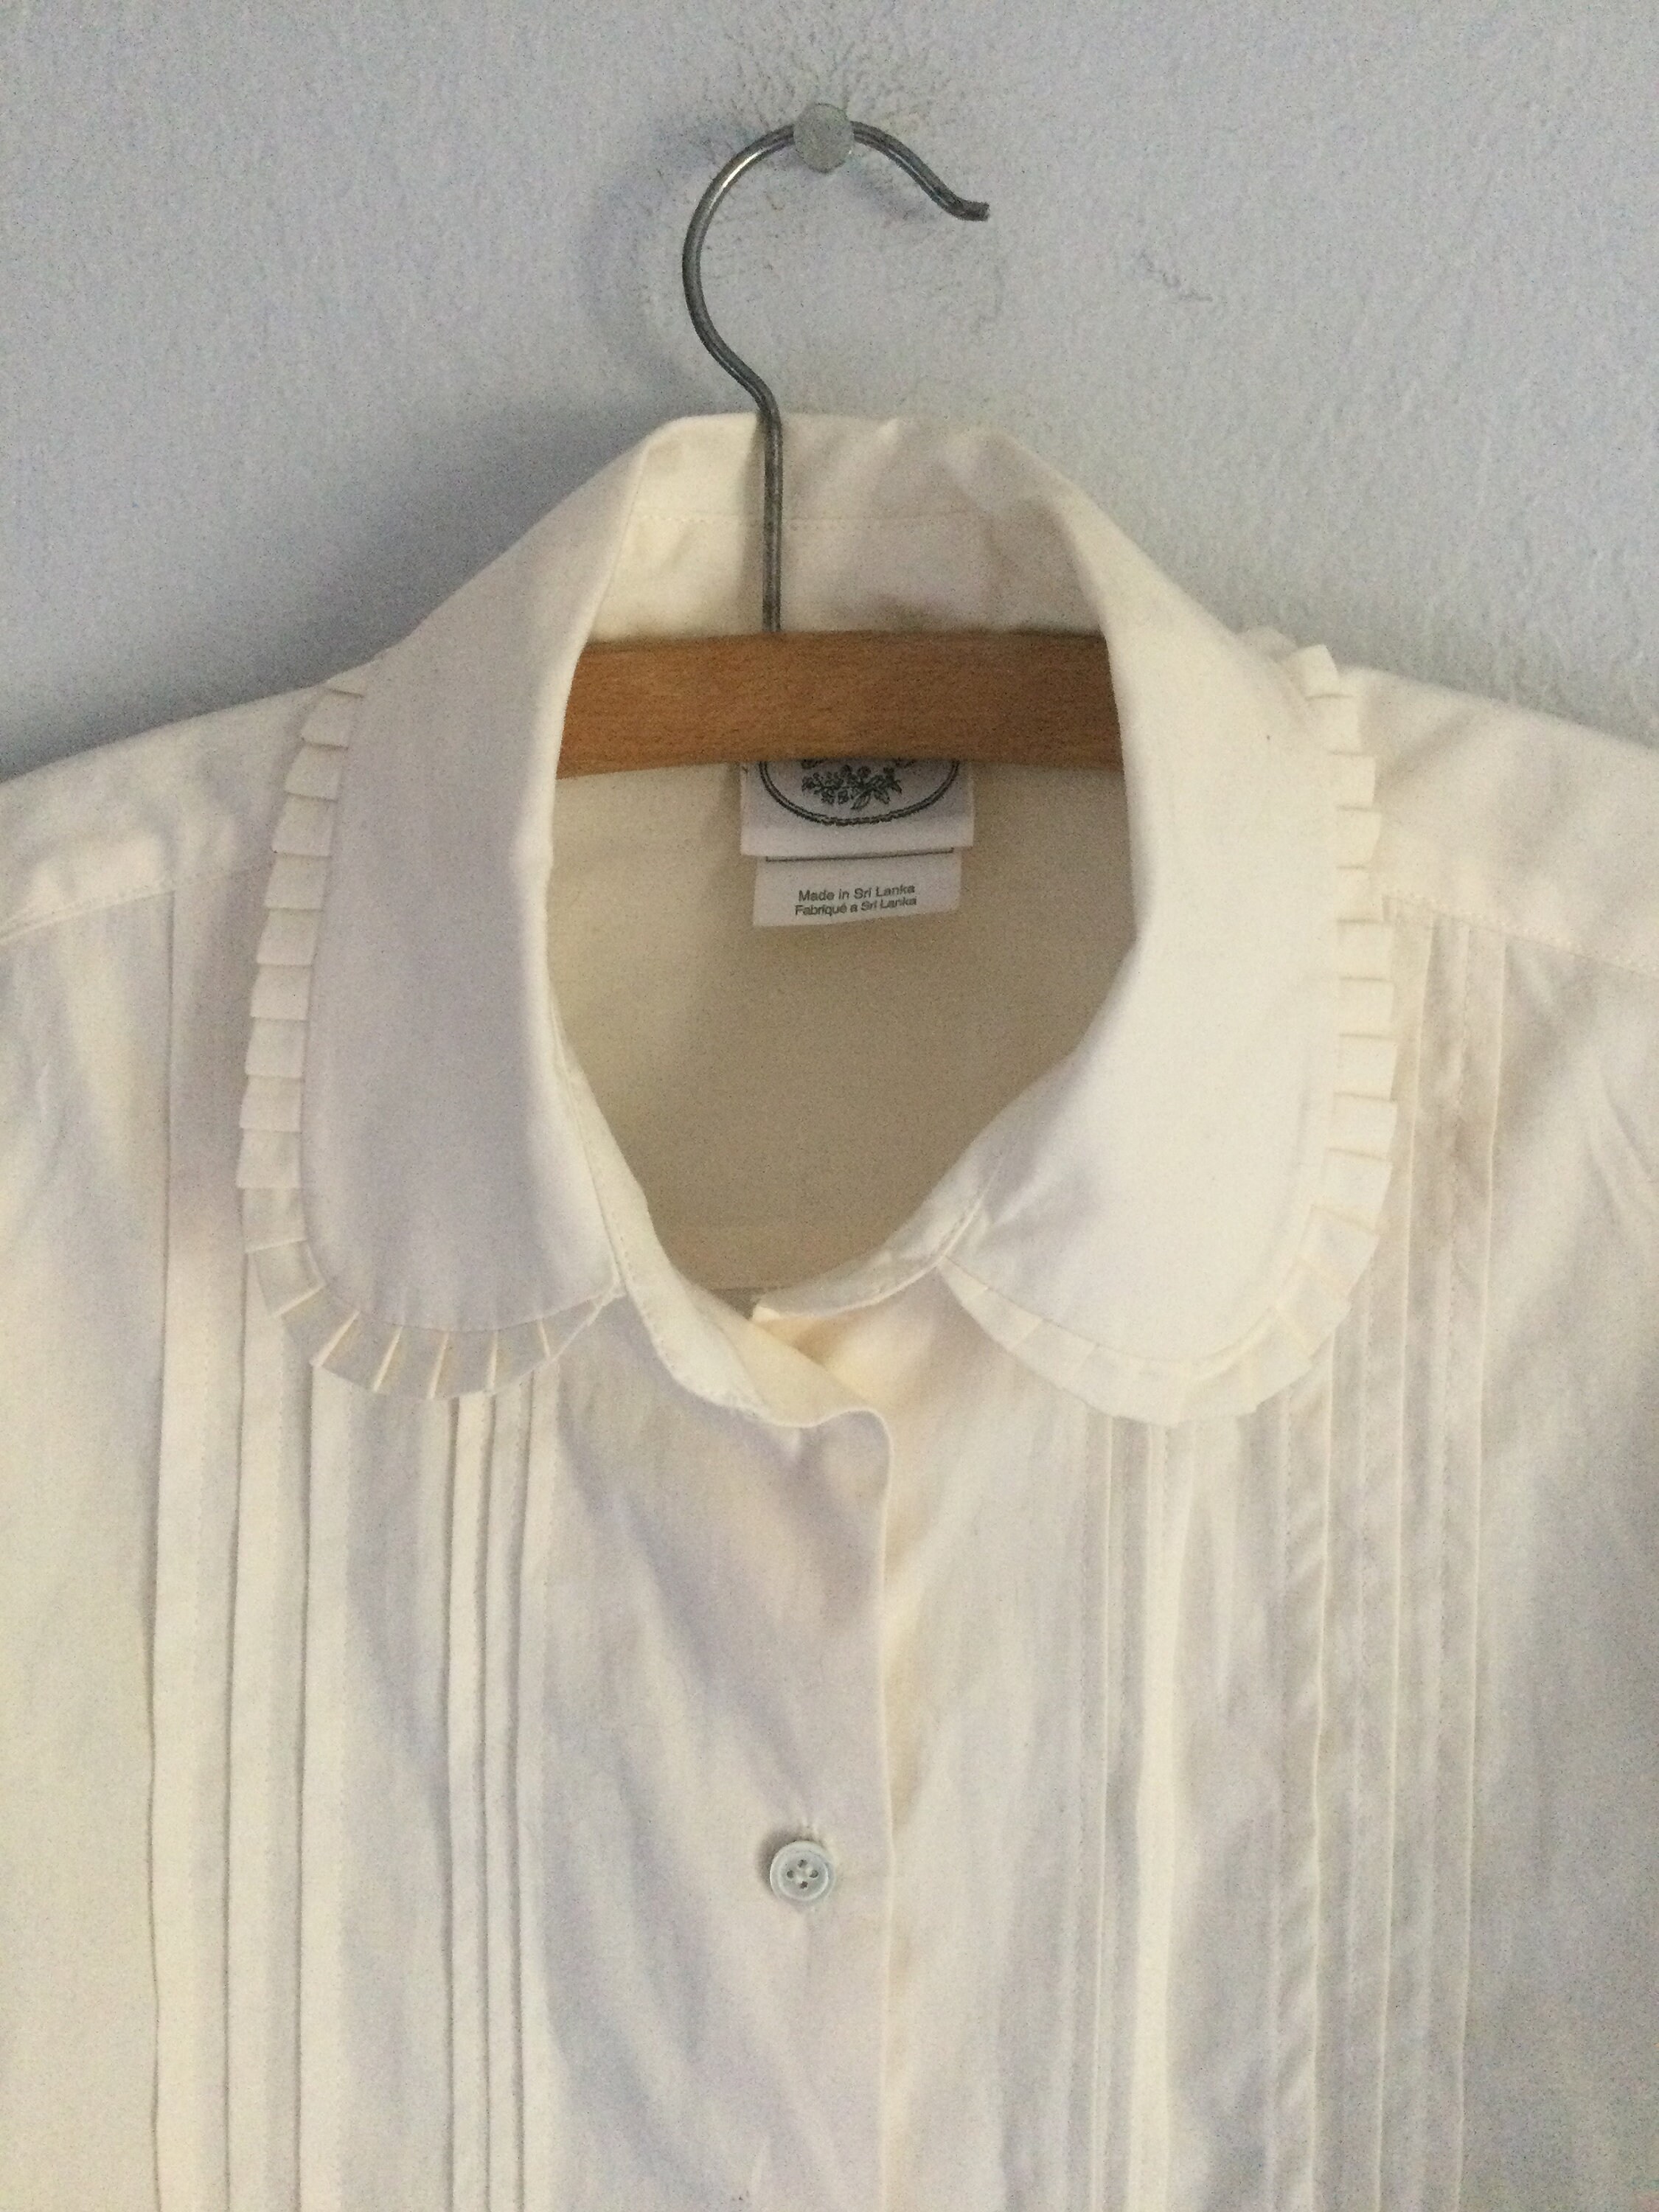 Kleding Meisjeskleding Tops & T-shirts Blouses jaren 80 Laura Ashley wit katoenen shirt S 